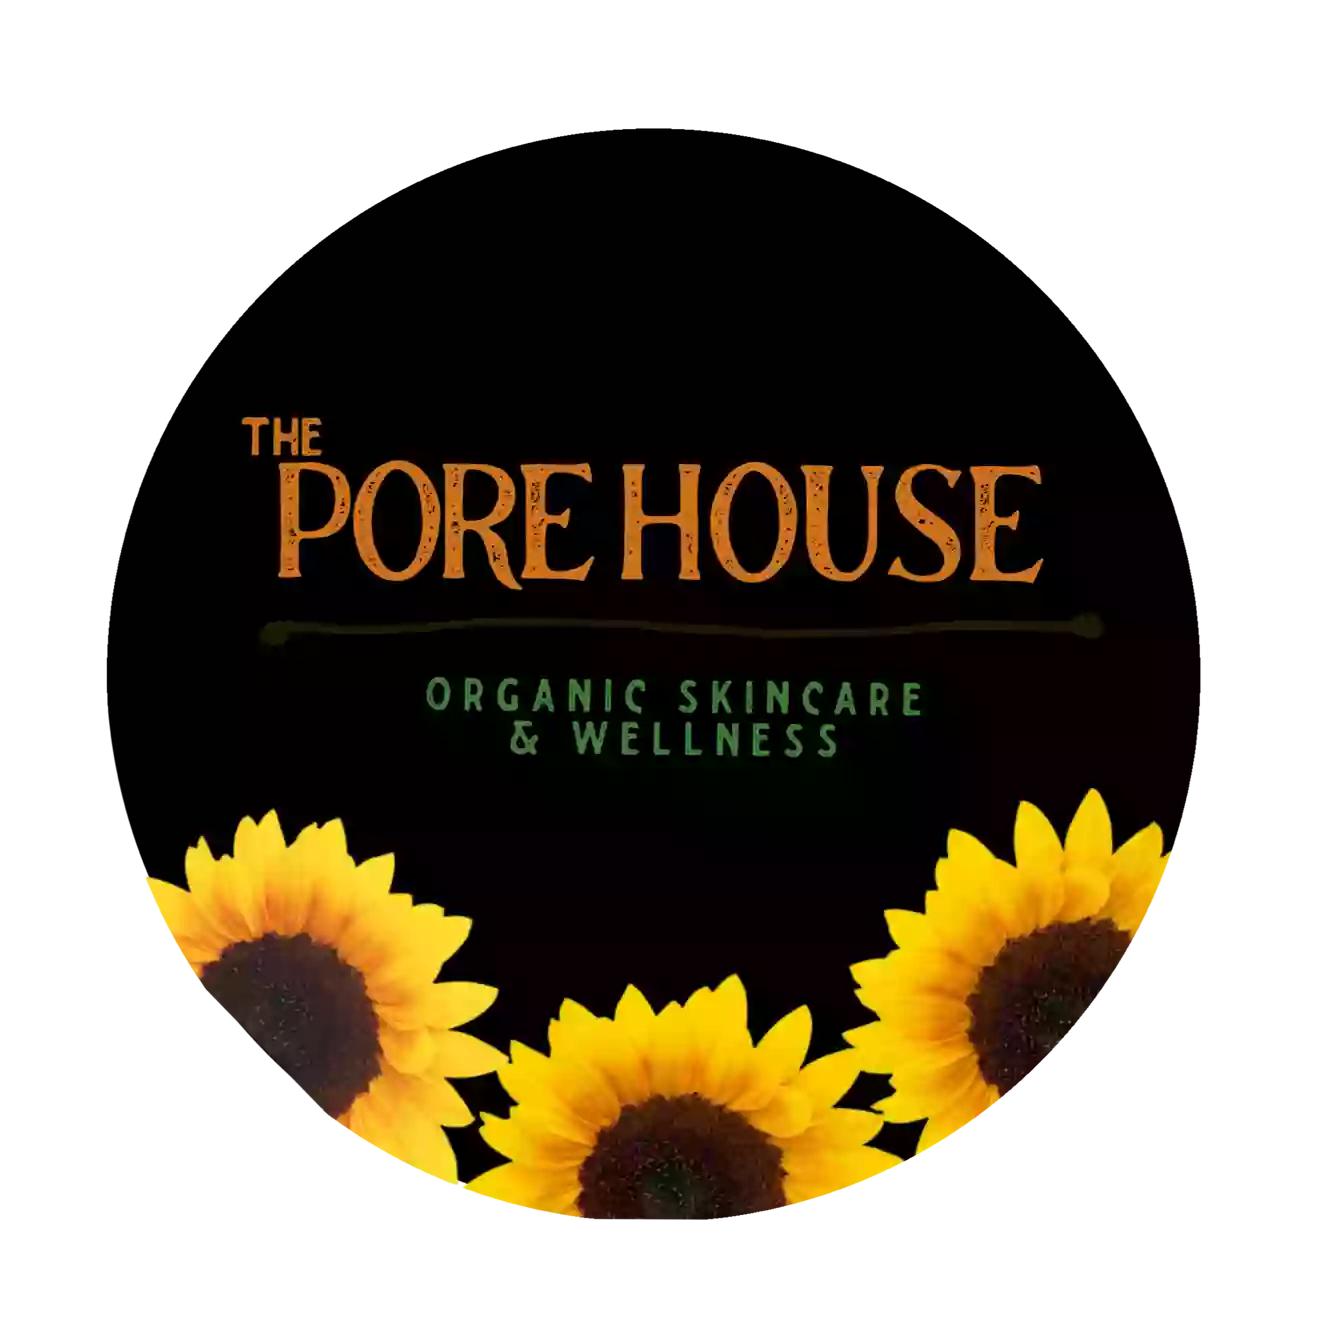 The Pore House Organic Skincare & Wellness